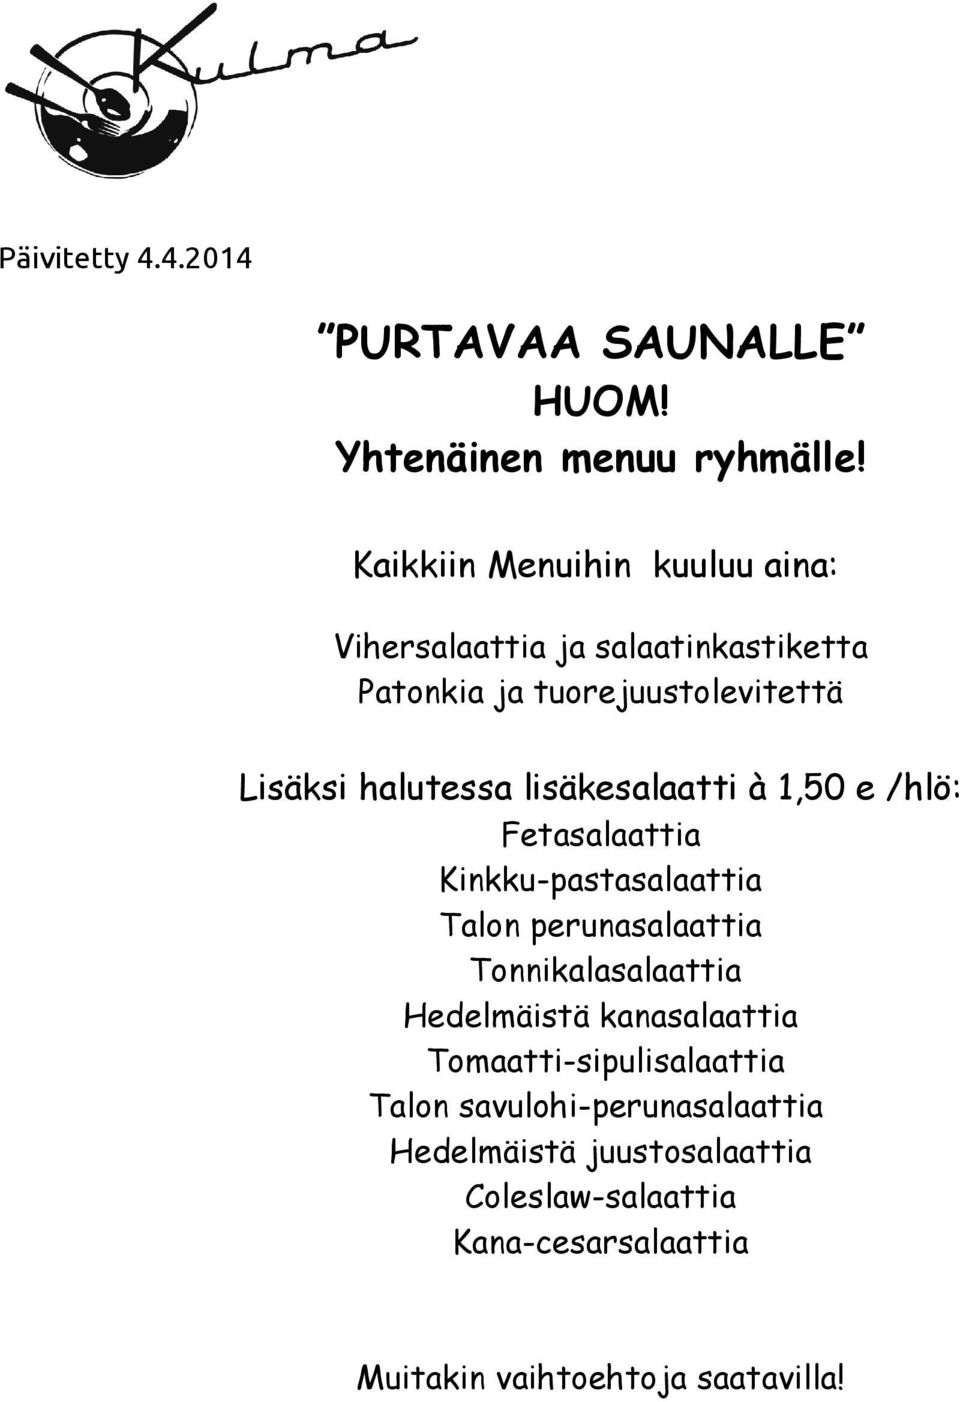 lisäkesalaatti à 1,50 e /hlö: Fetasalaattia Kinkku-pastasalaattia Talon perunasalaattia Tonnikalasalaattia Hedelmäistä